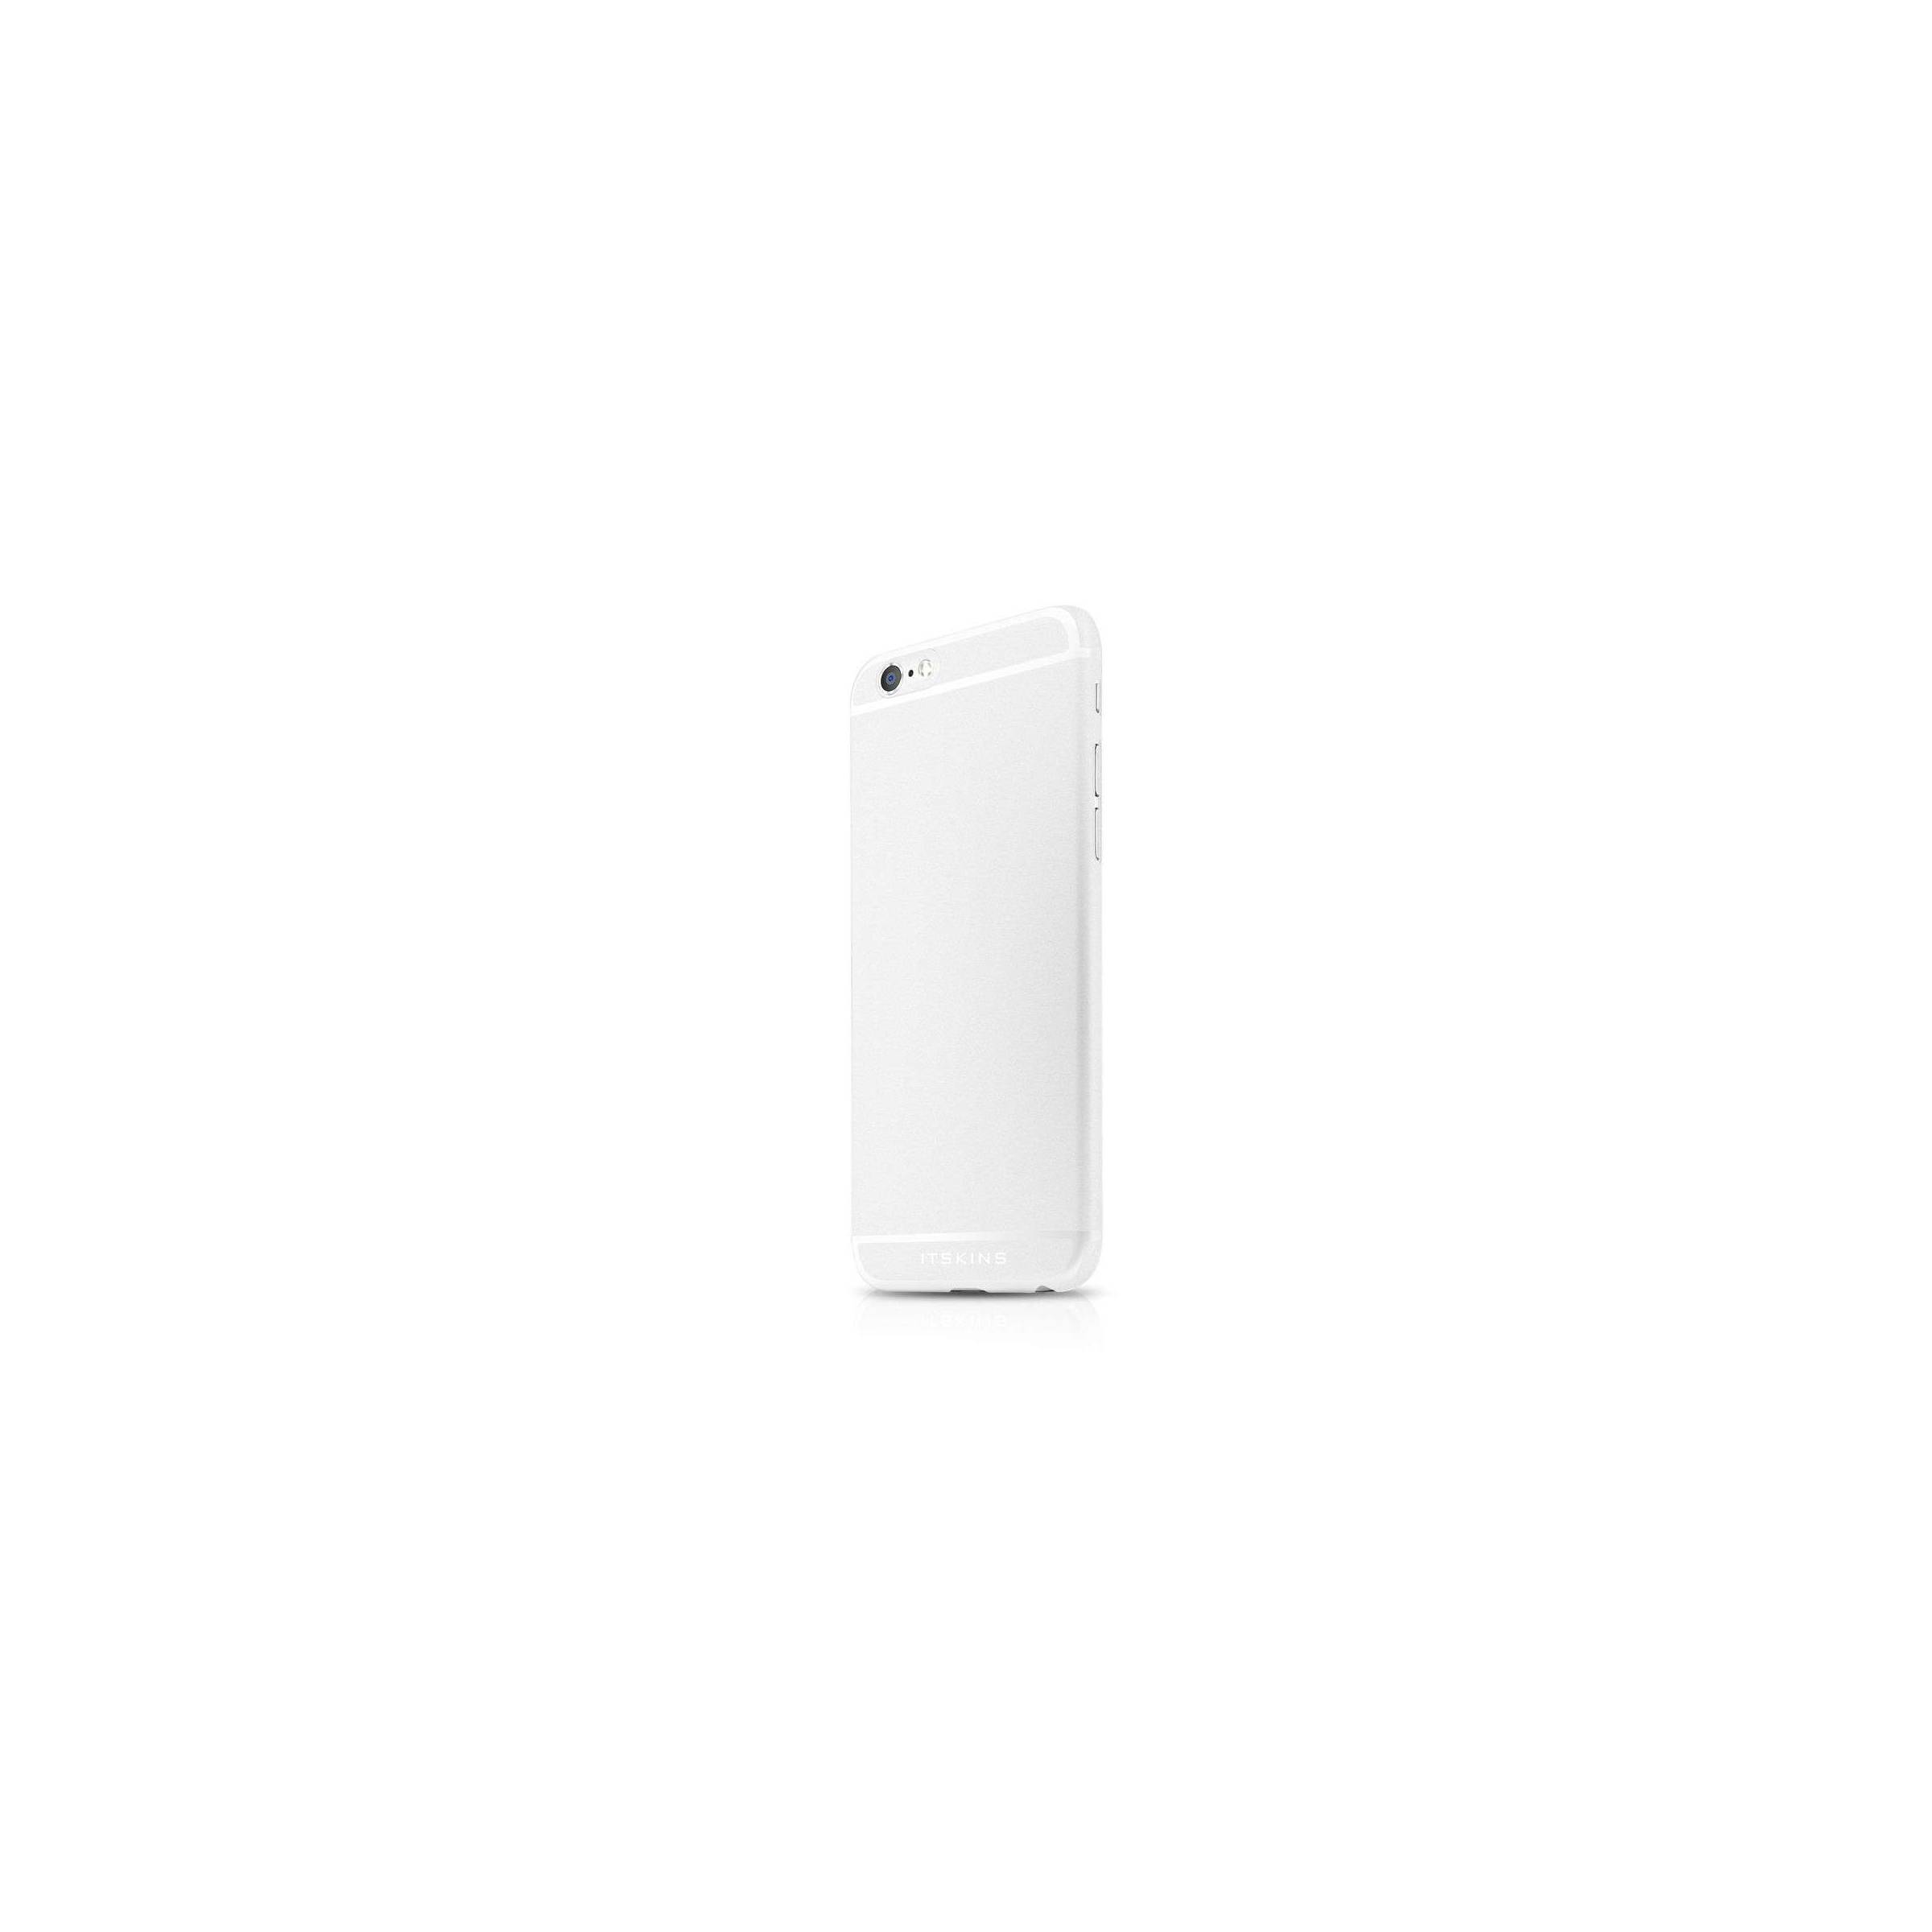 Bilde av Itskins Slim Cover Til Iphone 6 & Iphone 6s Hvid